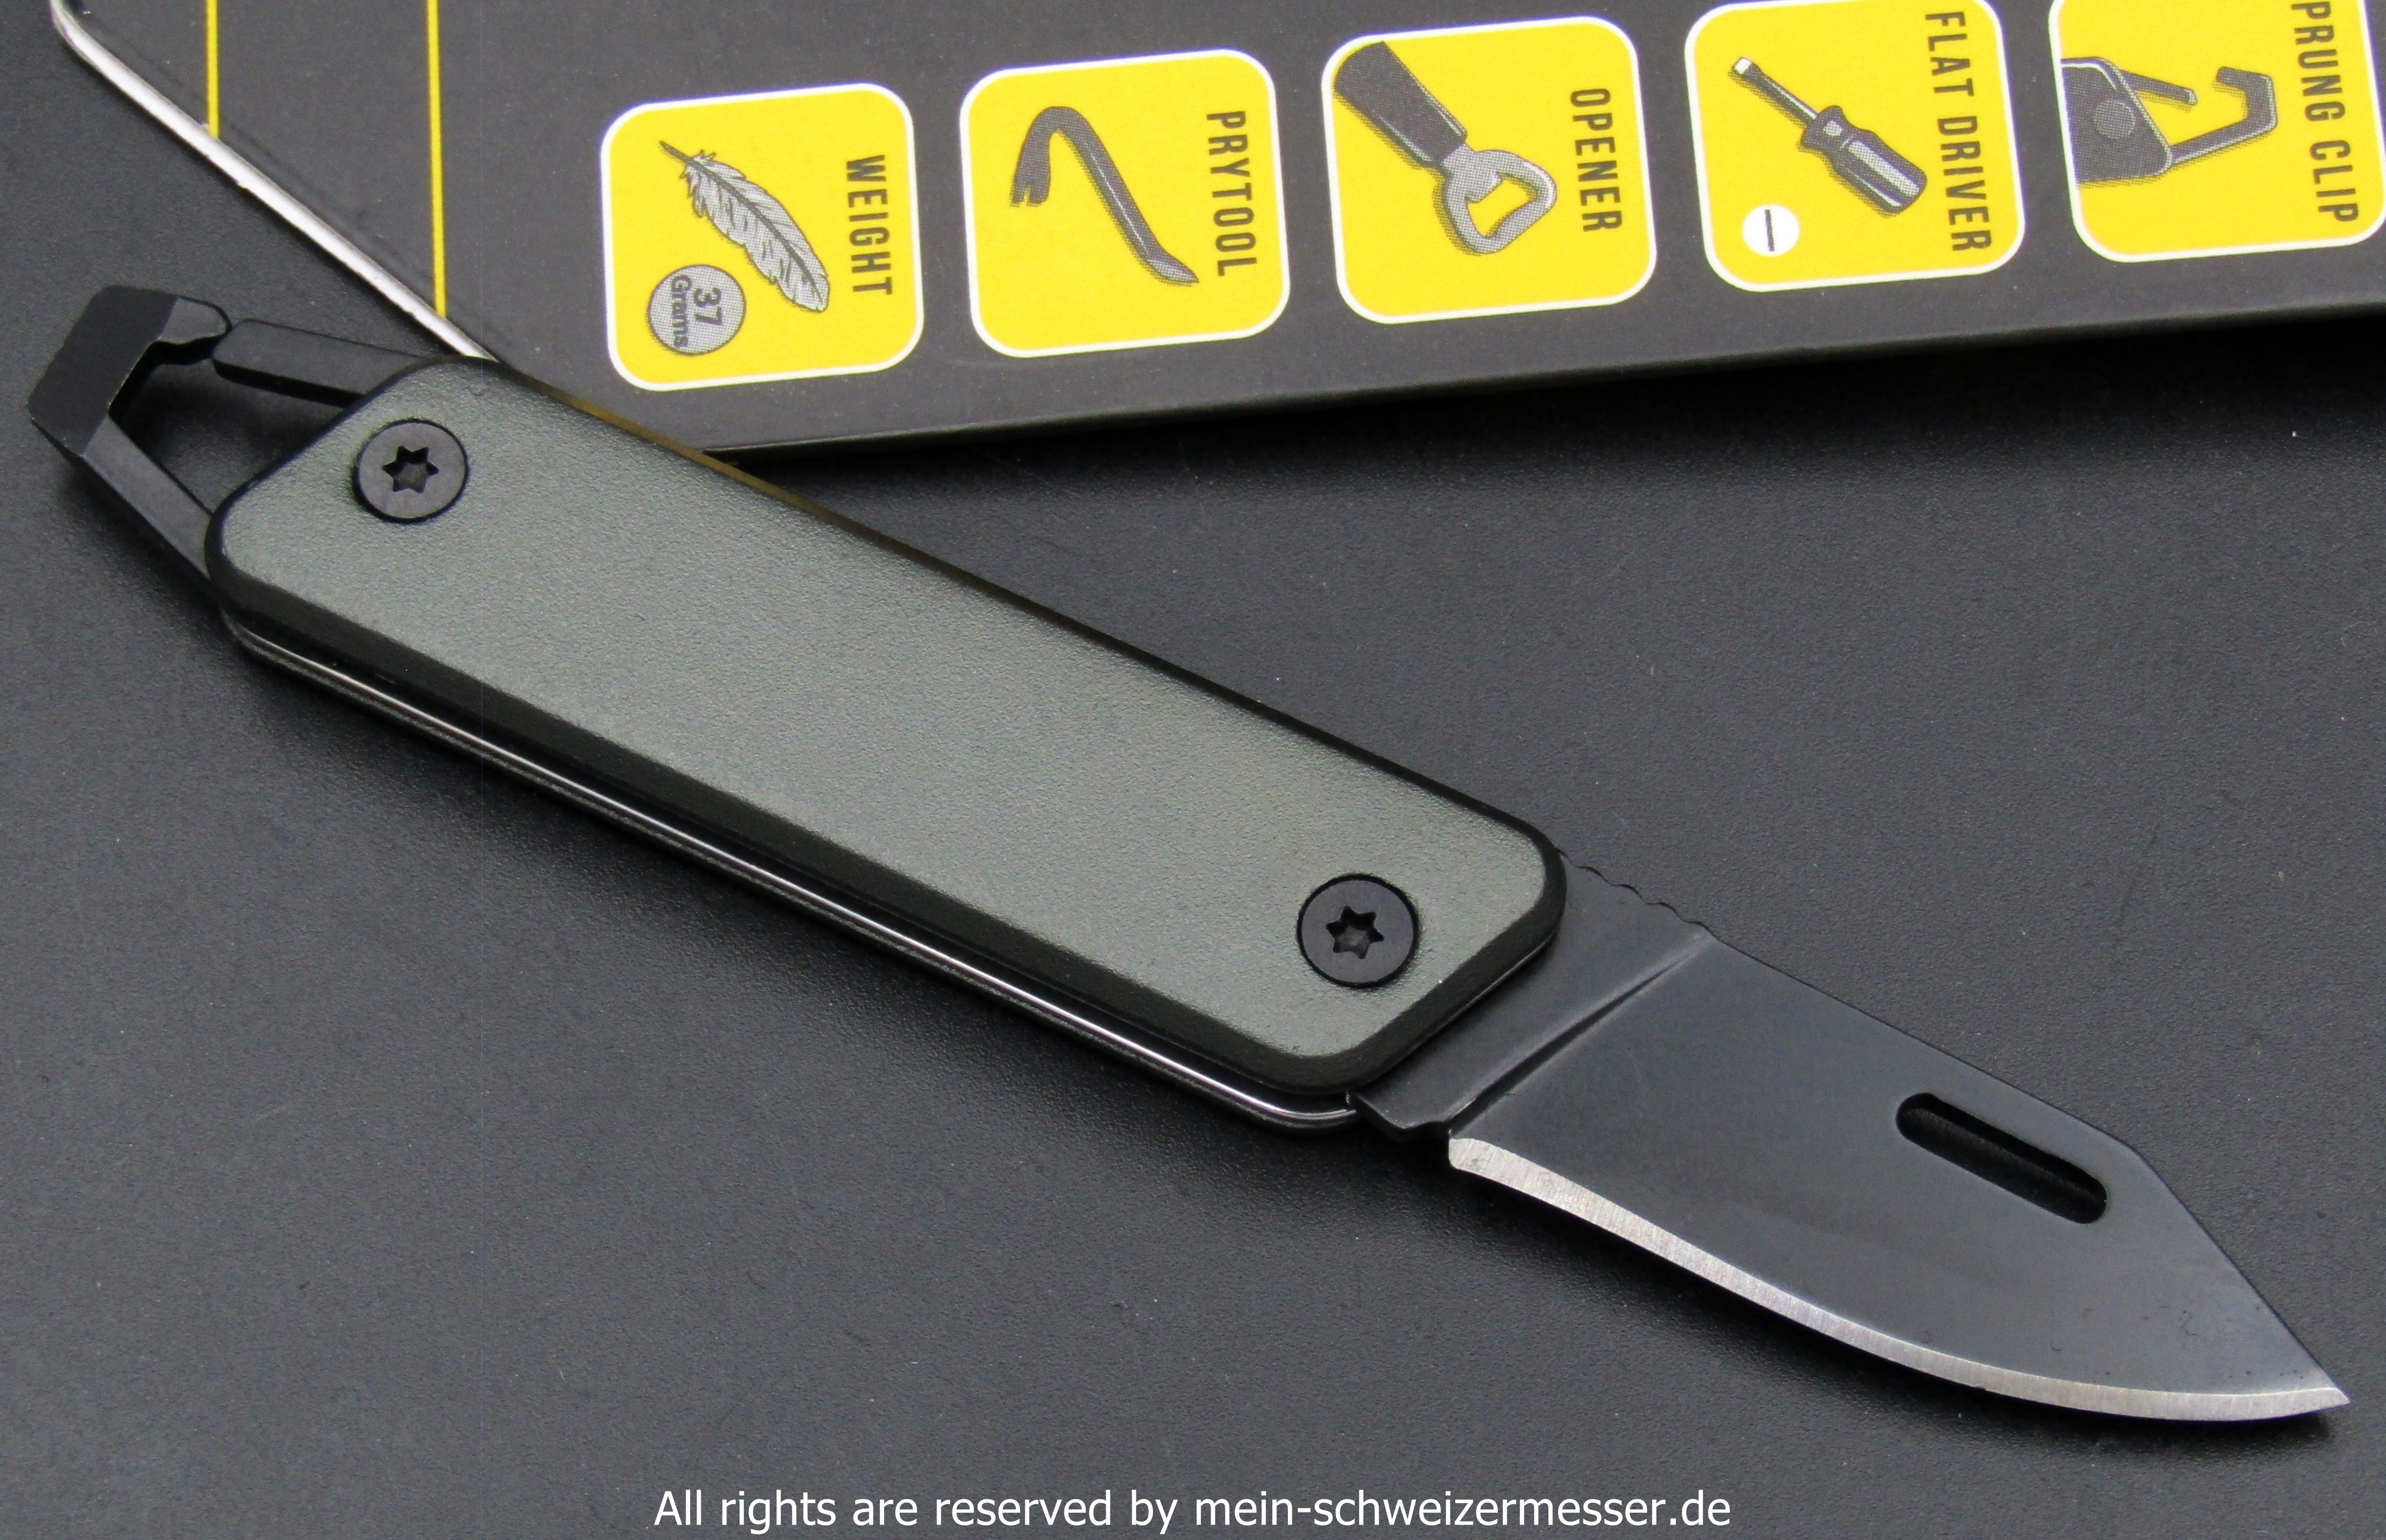 mein-schweizermesser - MINI Taschenmesser True Utility, Schlüsselbund- Taschenmesser (Key Chain Knife)